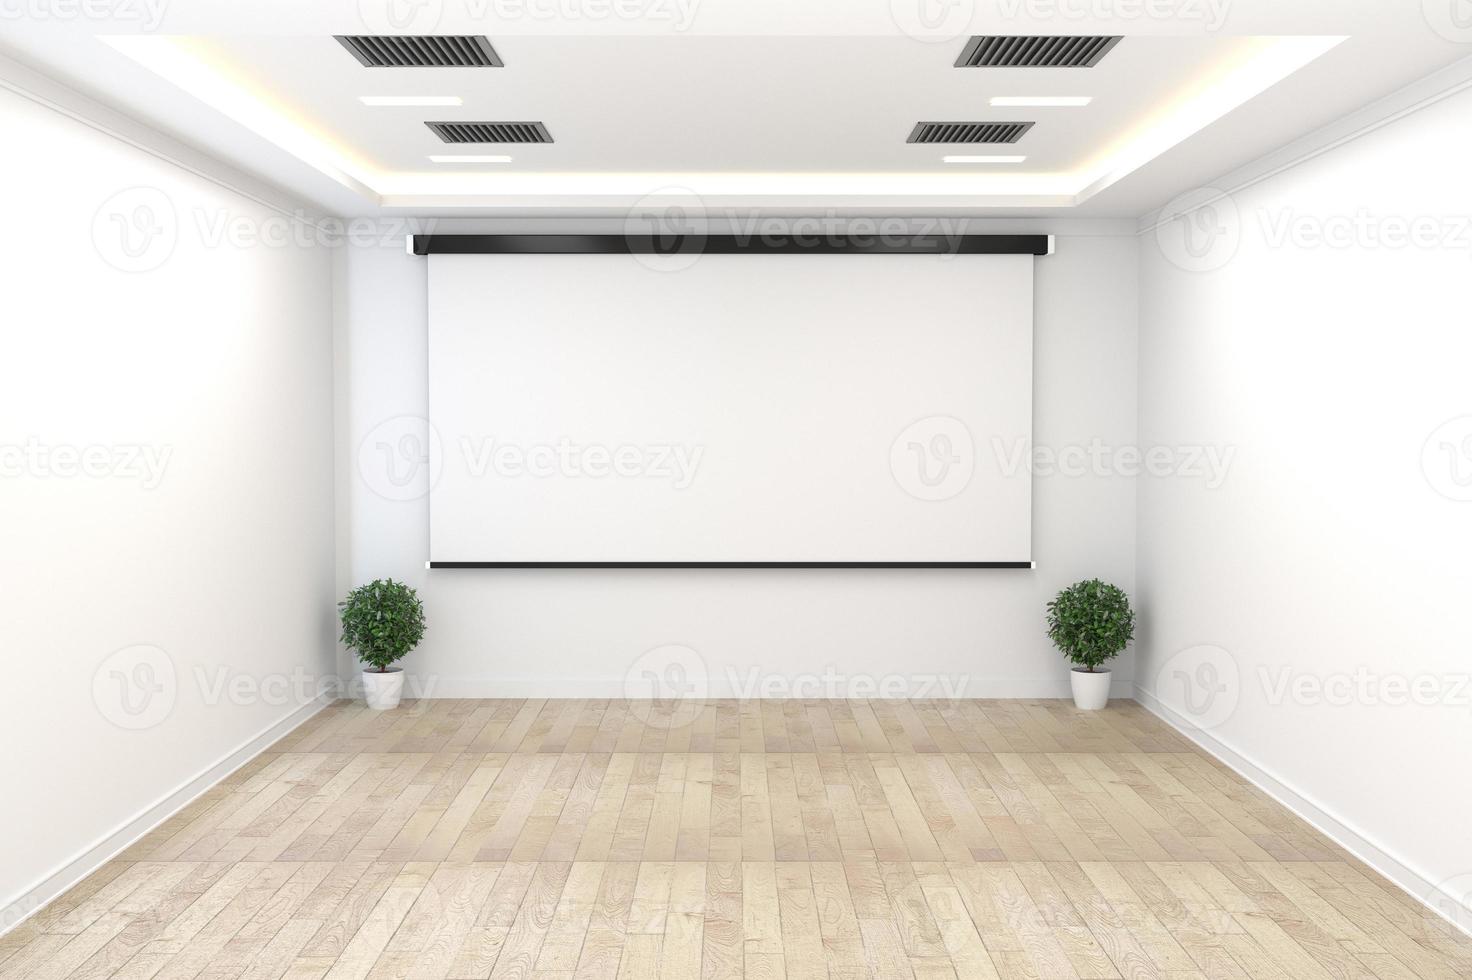 sala de juntas - concepto vacío, interior de negocios con plantas y piso de madera en la pared blanca vacía. Representación 3d foto